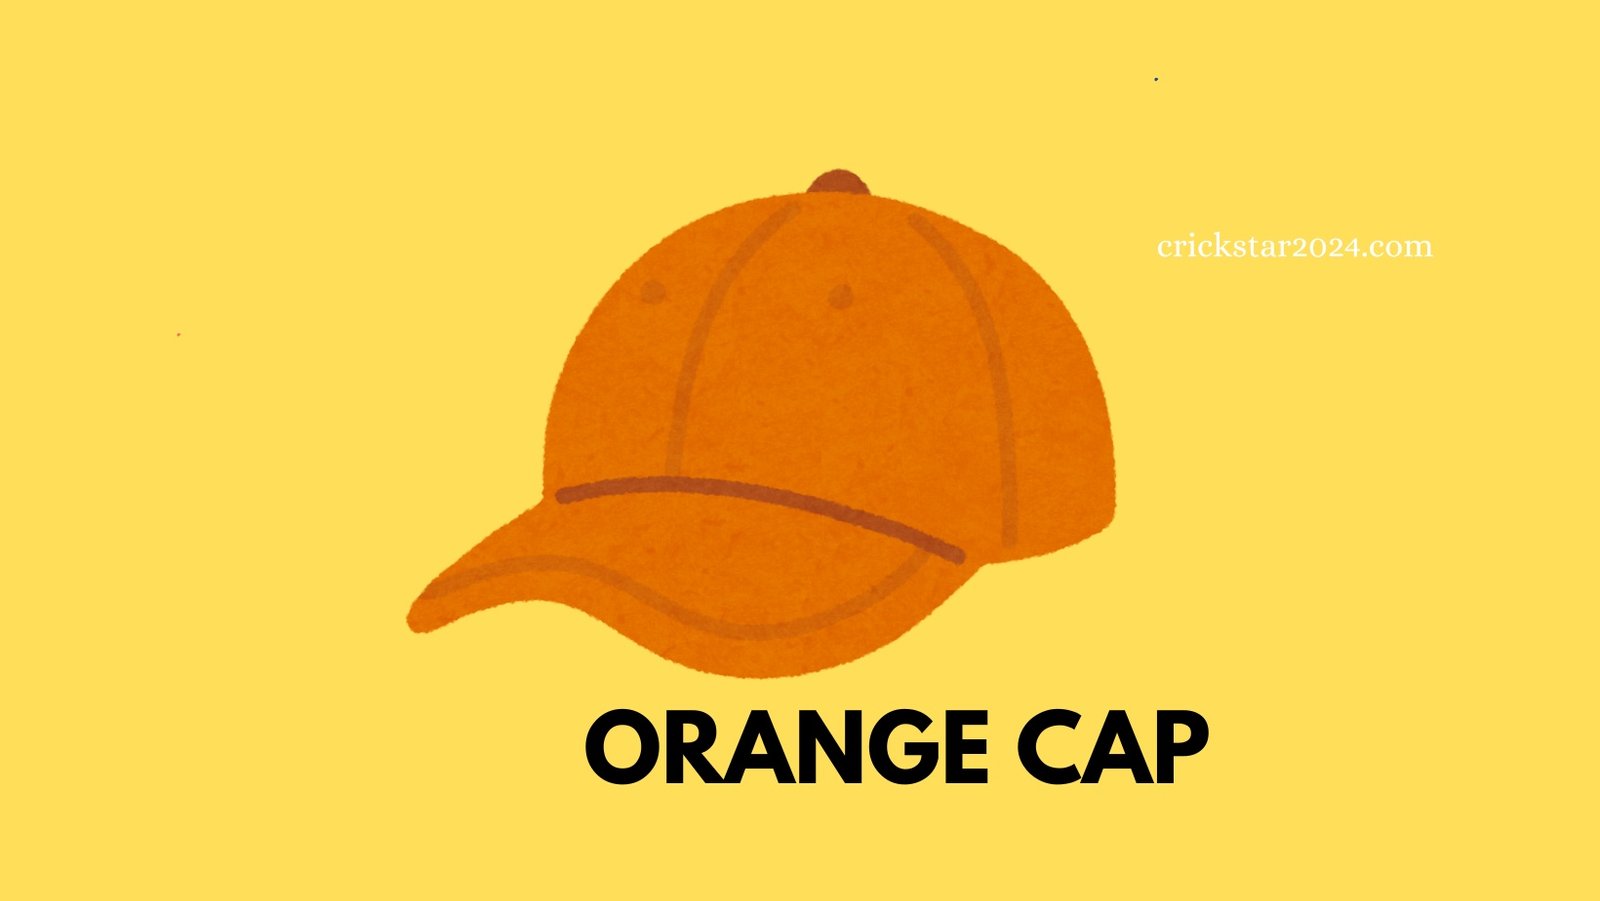 Who got orange cap in IPL 2024 आईपीएल 2024 में ऑरेंज कैप किसे मिली?